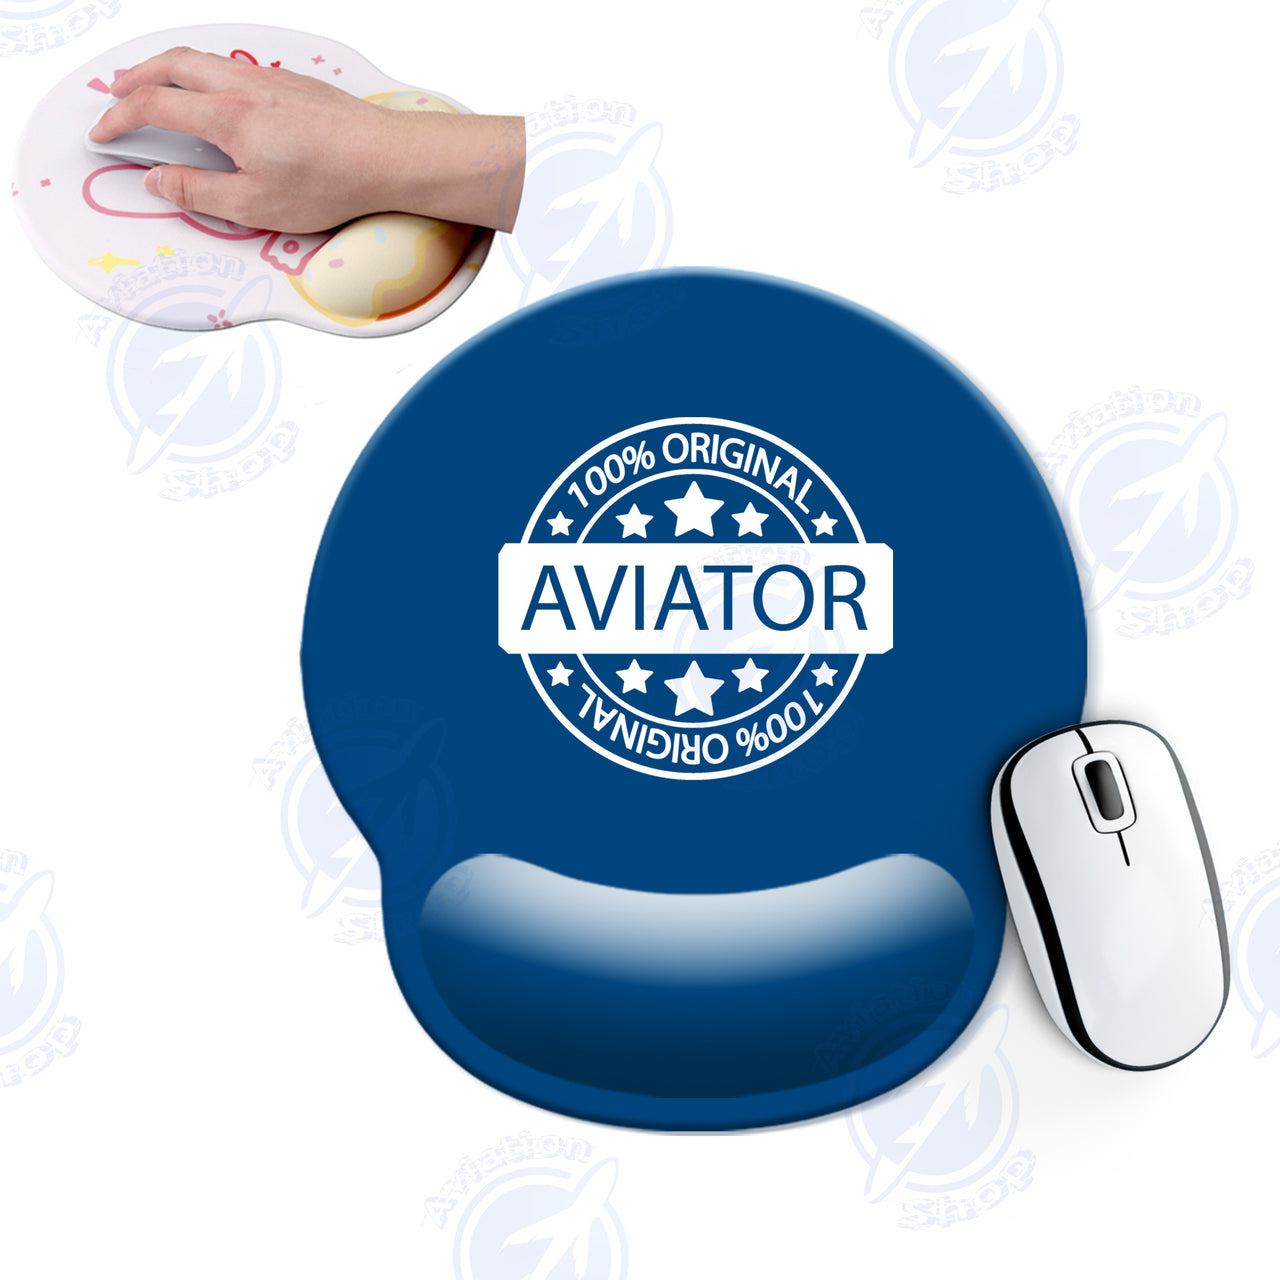 %100 Original Aviator Designed Ergonomic Mouse Pads